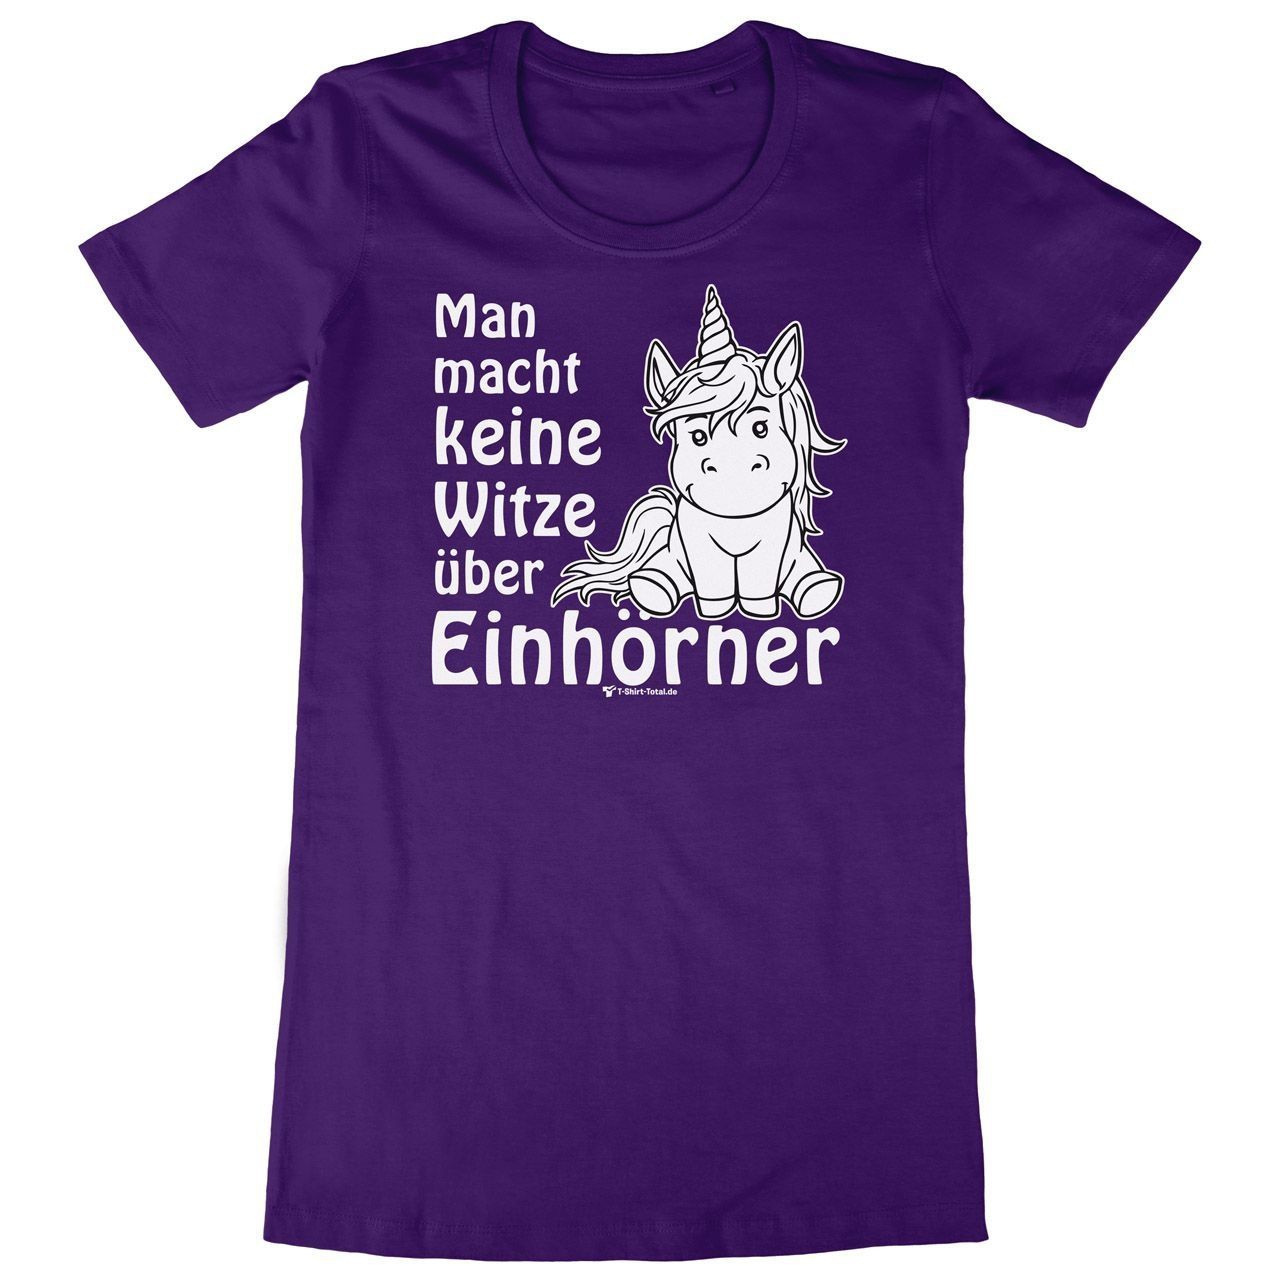 Einhorn Witze Woman Long Shirt lila Medium